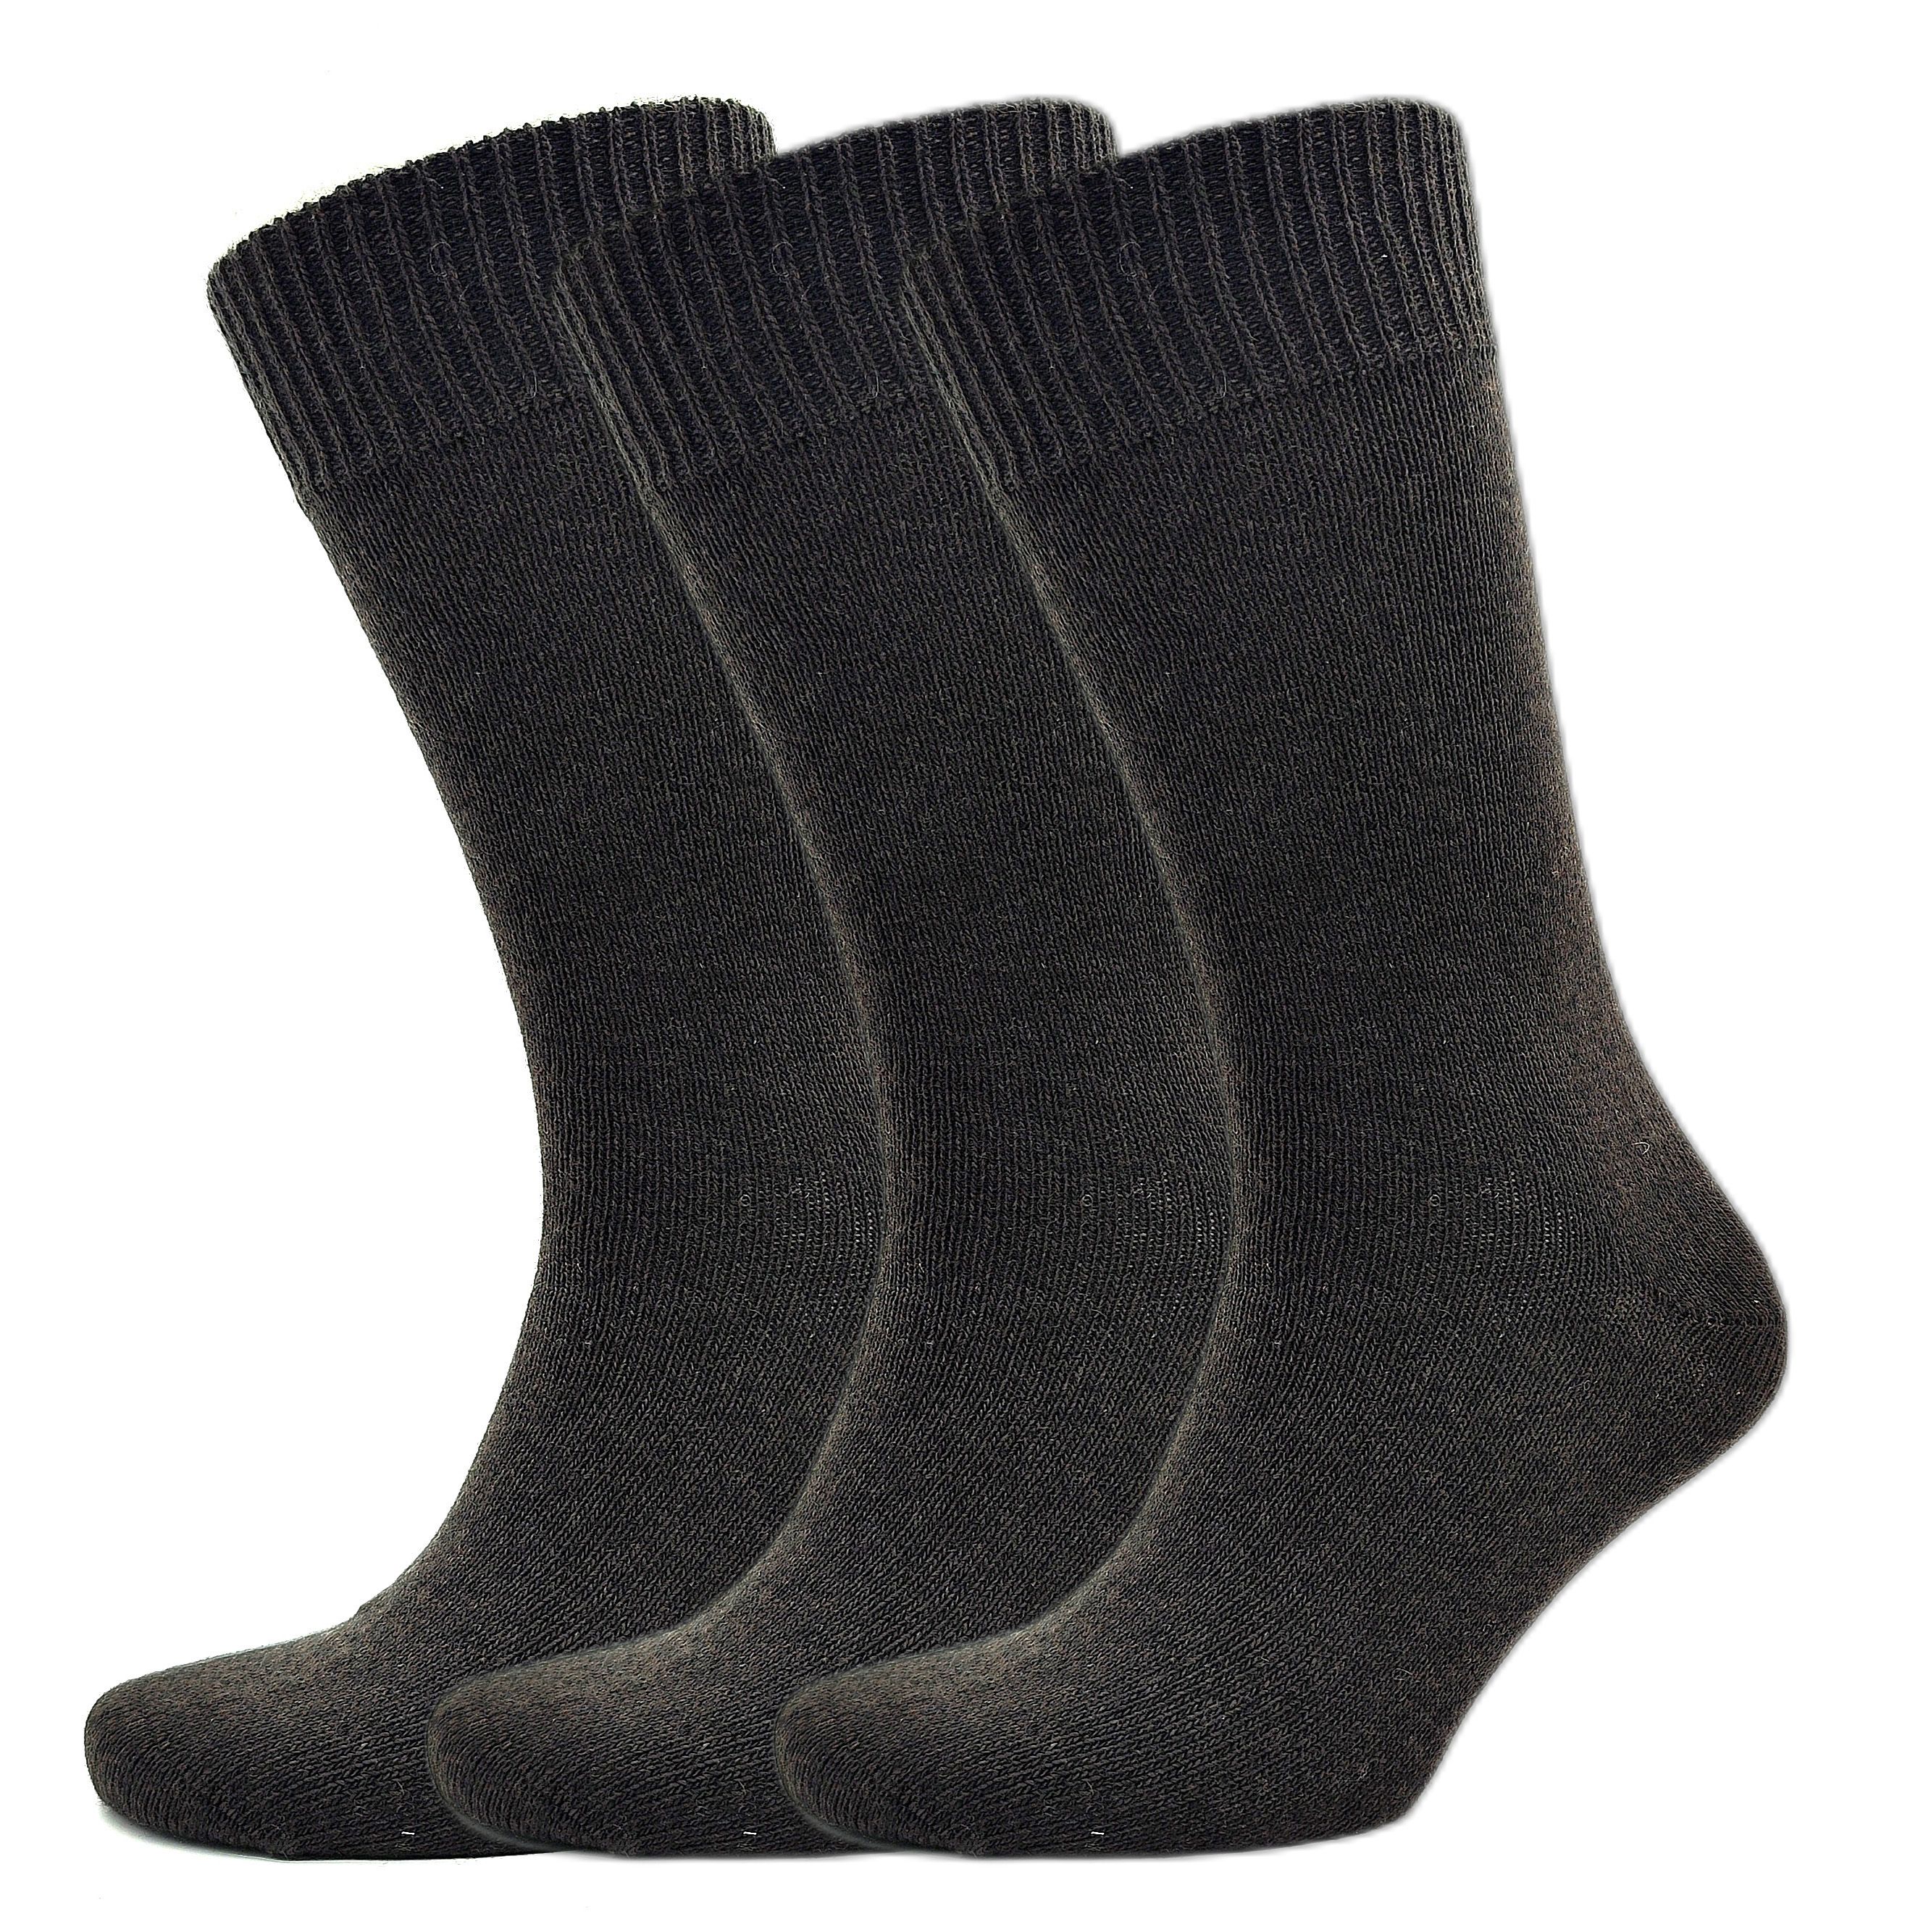 1144 Wool Brown: 3 pairs